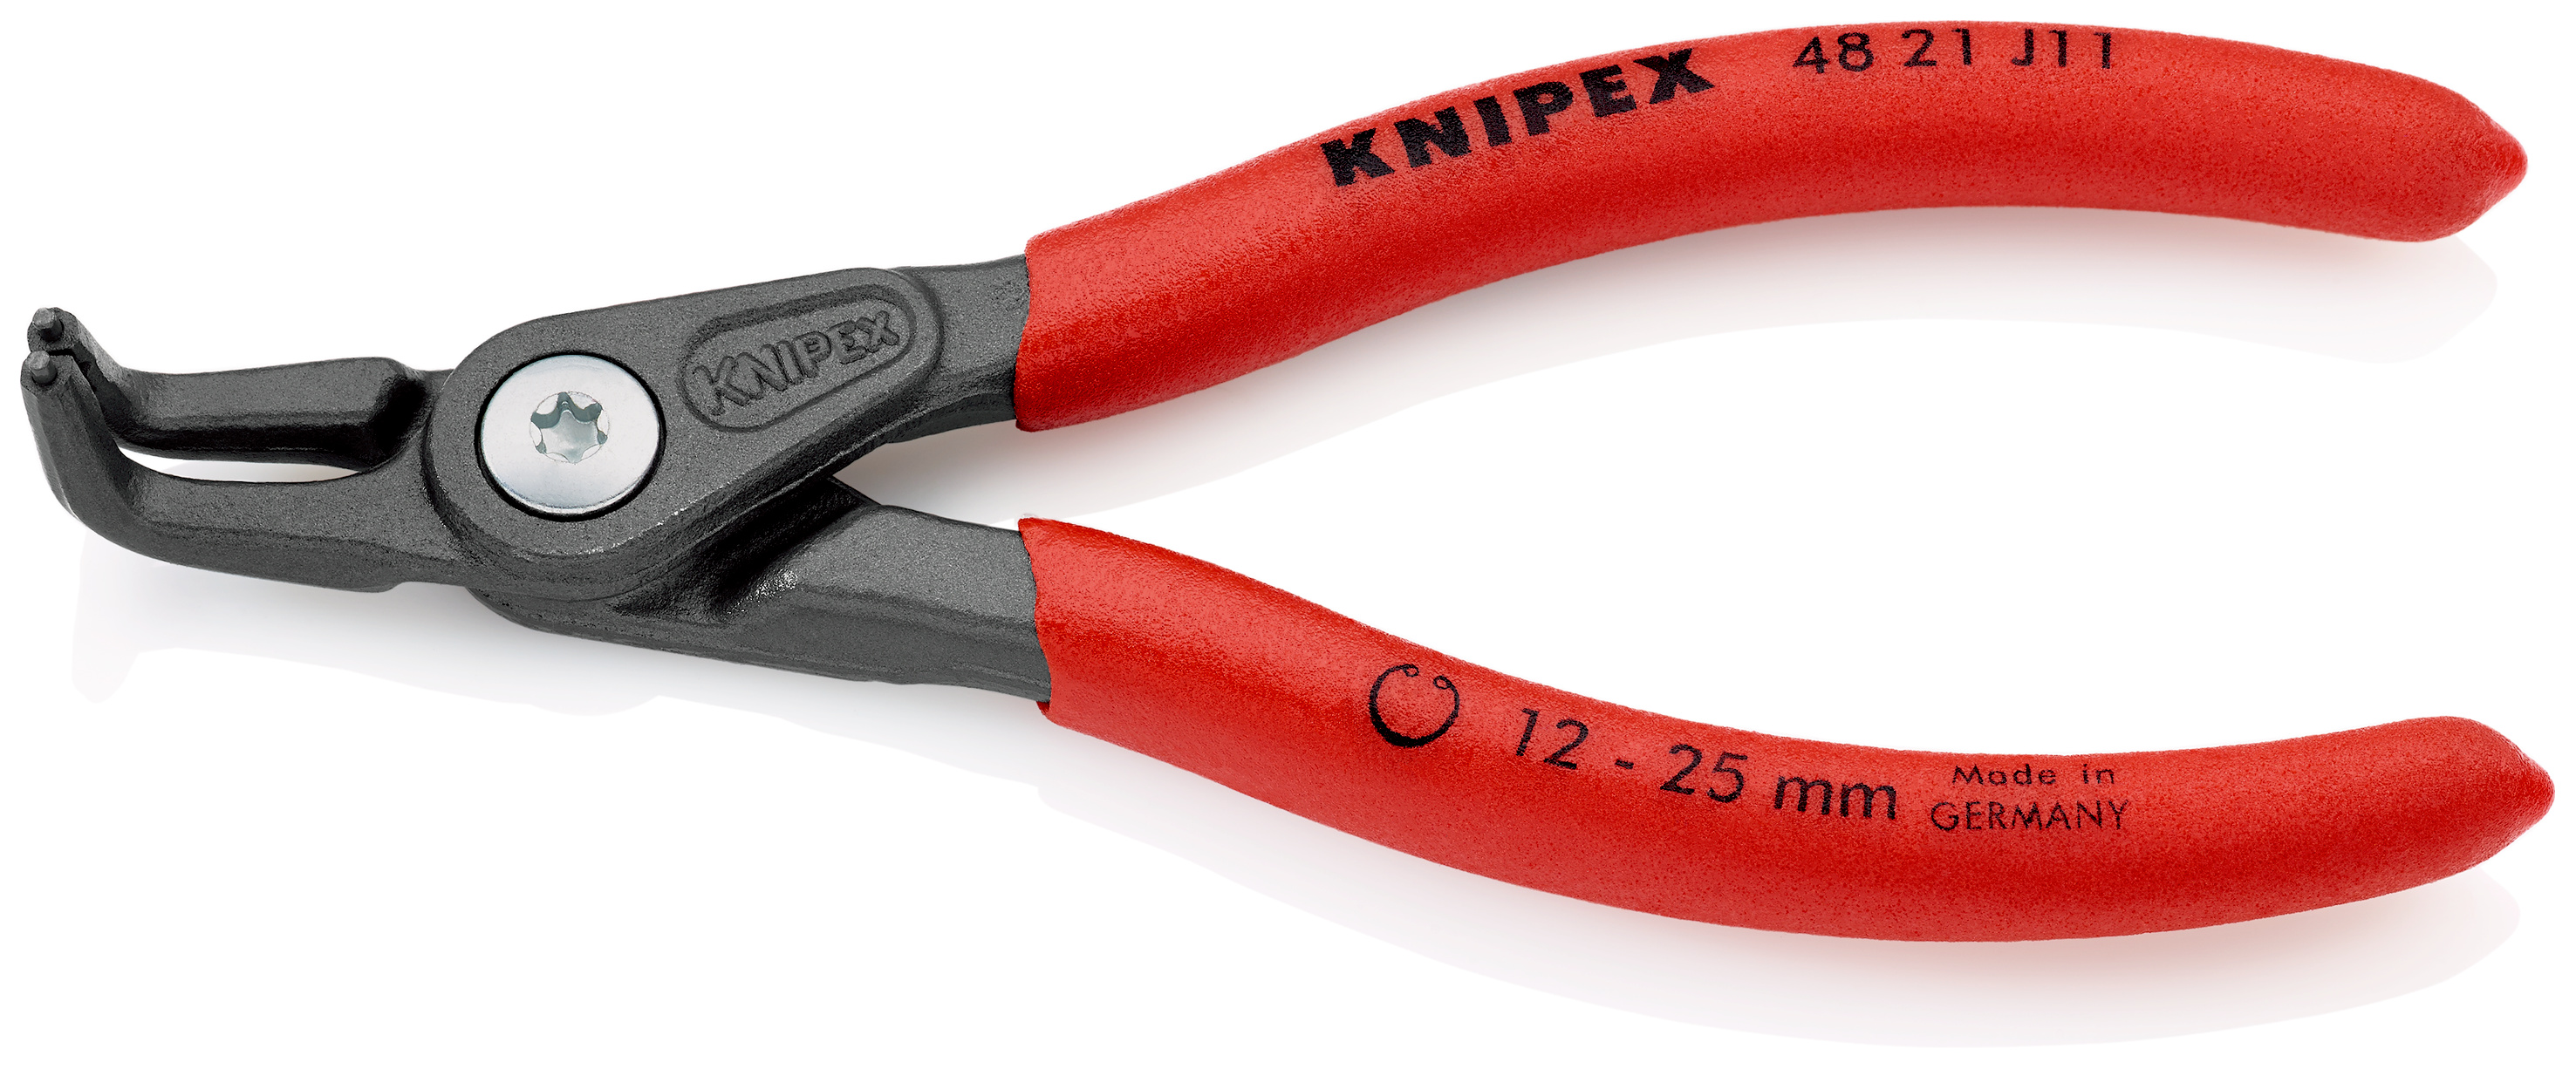 KNIPEX 48 21 J31 Alicate de precisión para arandelas para arandelas interiores en taladros gris atramentado recubiertos de plástico antideslizante 210 mm